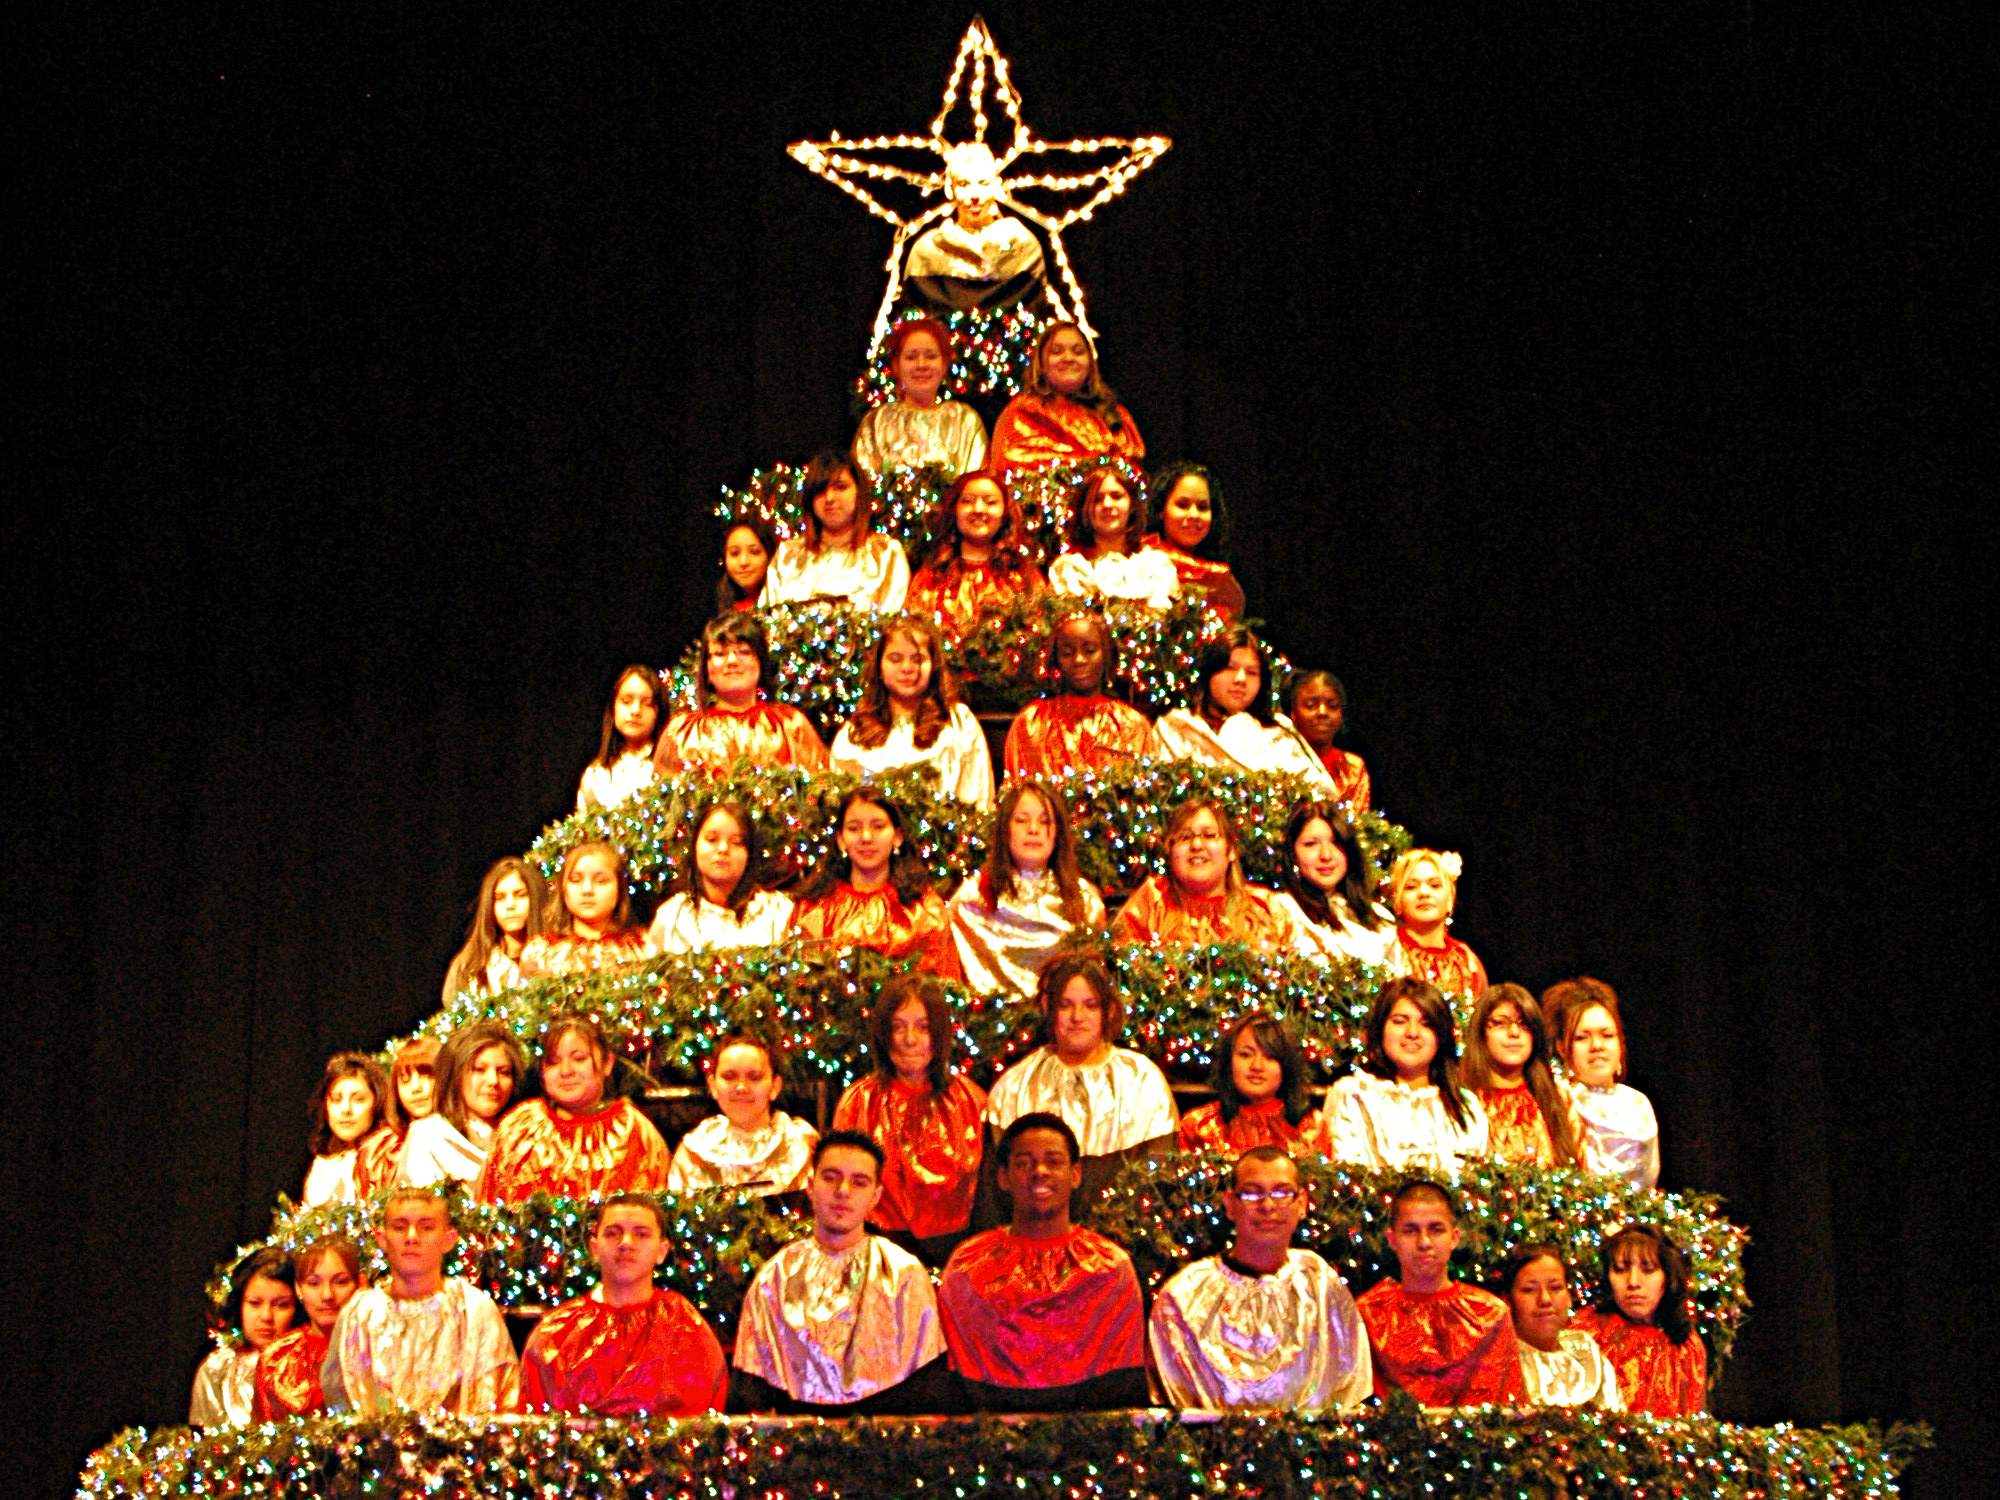 Photo: Singing Christmas Tree